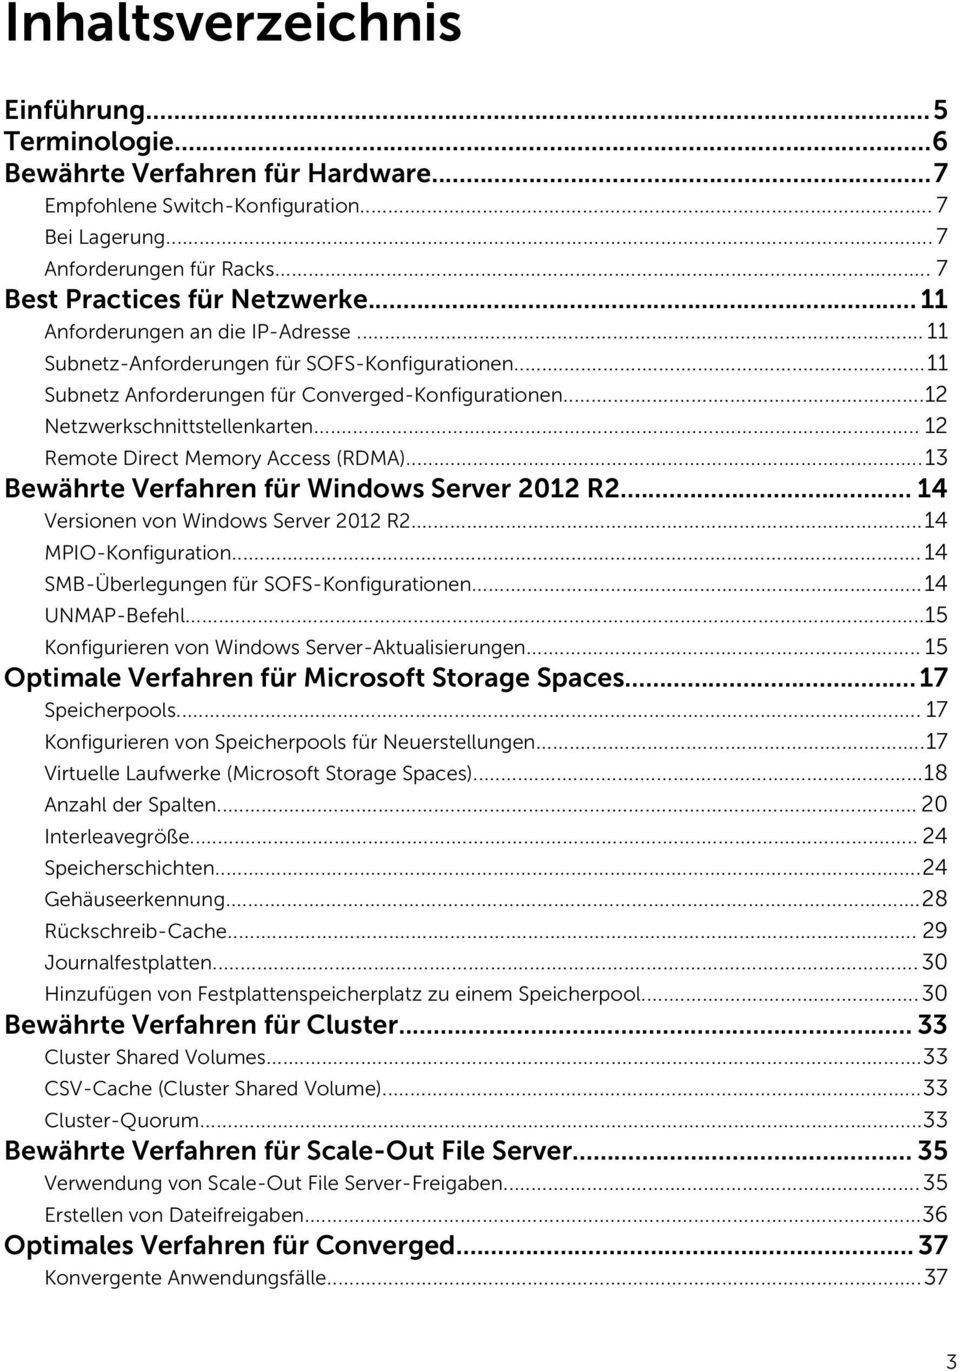 .. 12 Remote Direct Memory Access (RDMA)...13 Bewährte Verfahren für Windows Server 2012 R2... 14 Versionen von Windows Server 2012 R2...14 MPIO-Konfiguration.